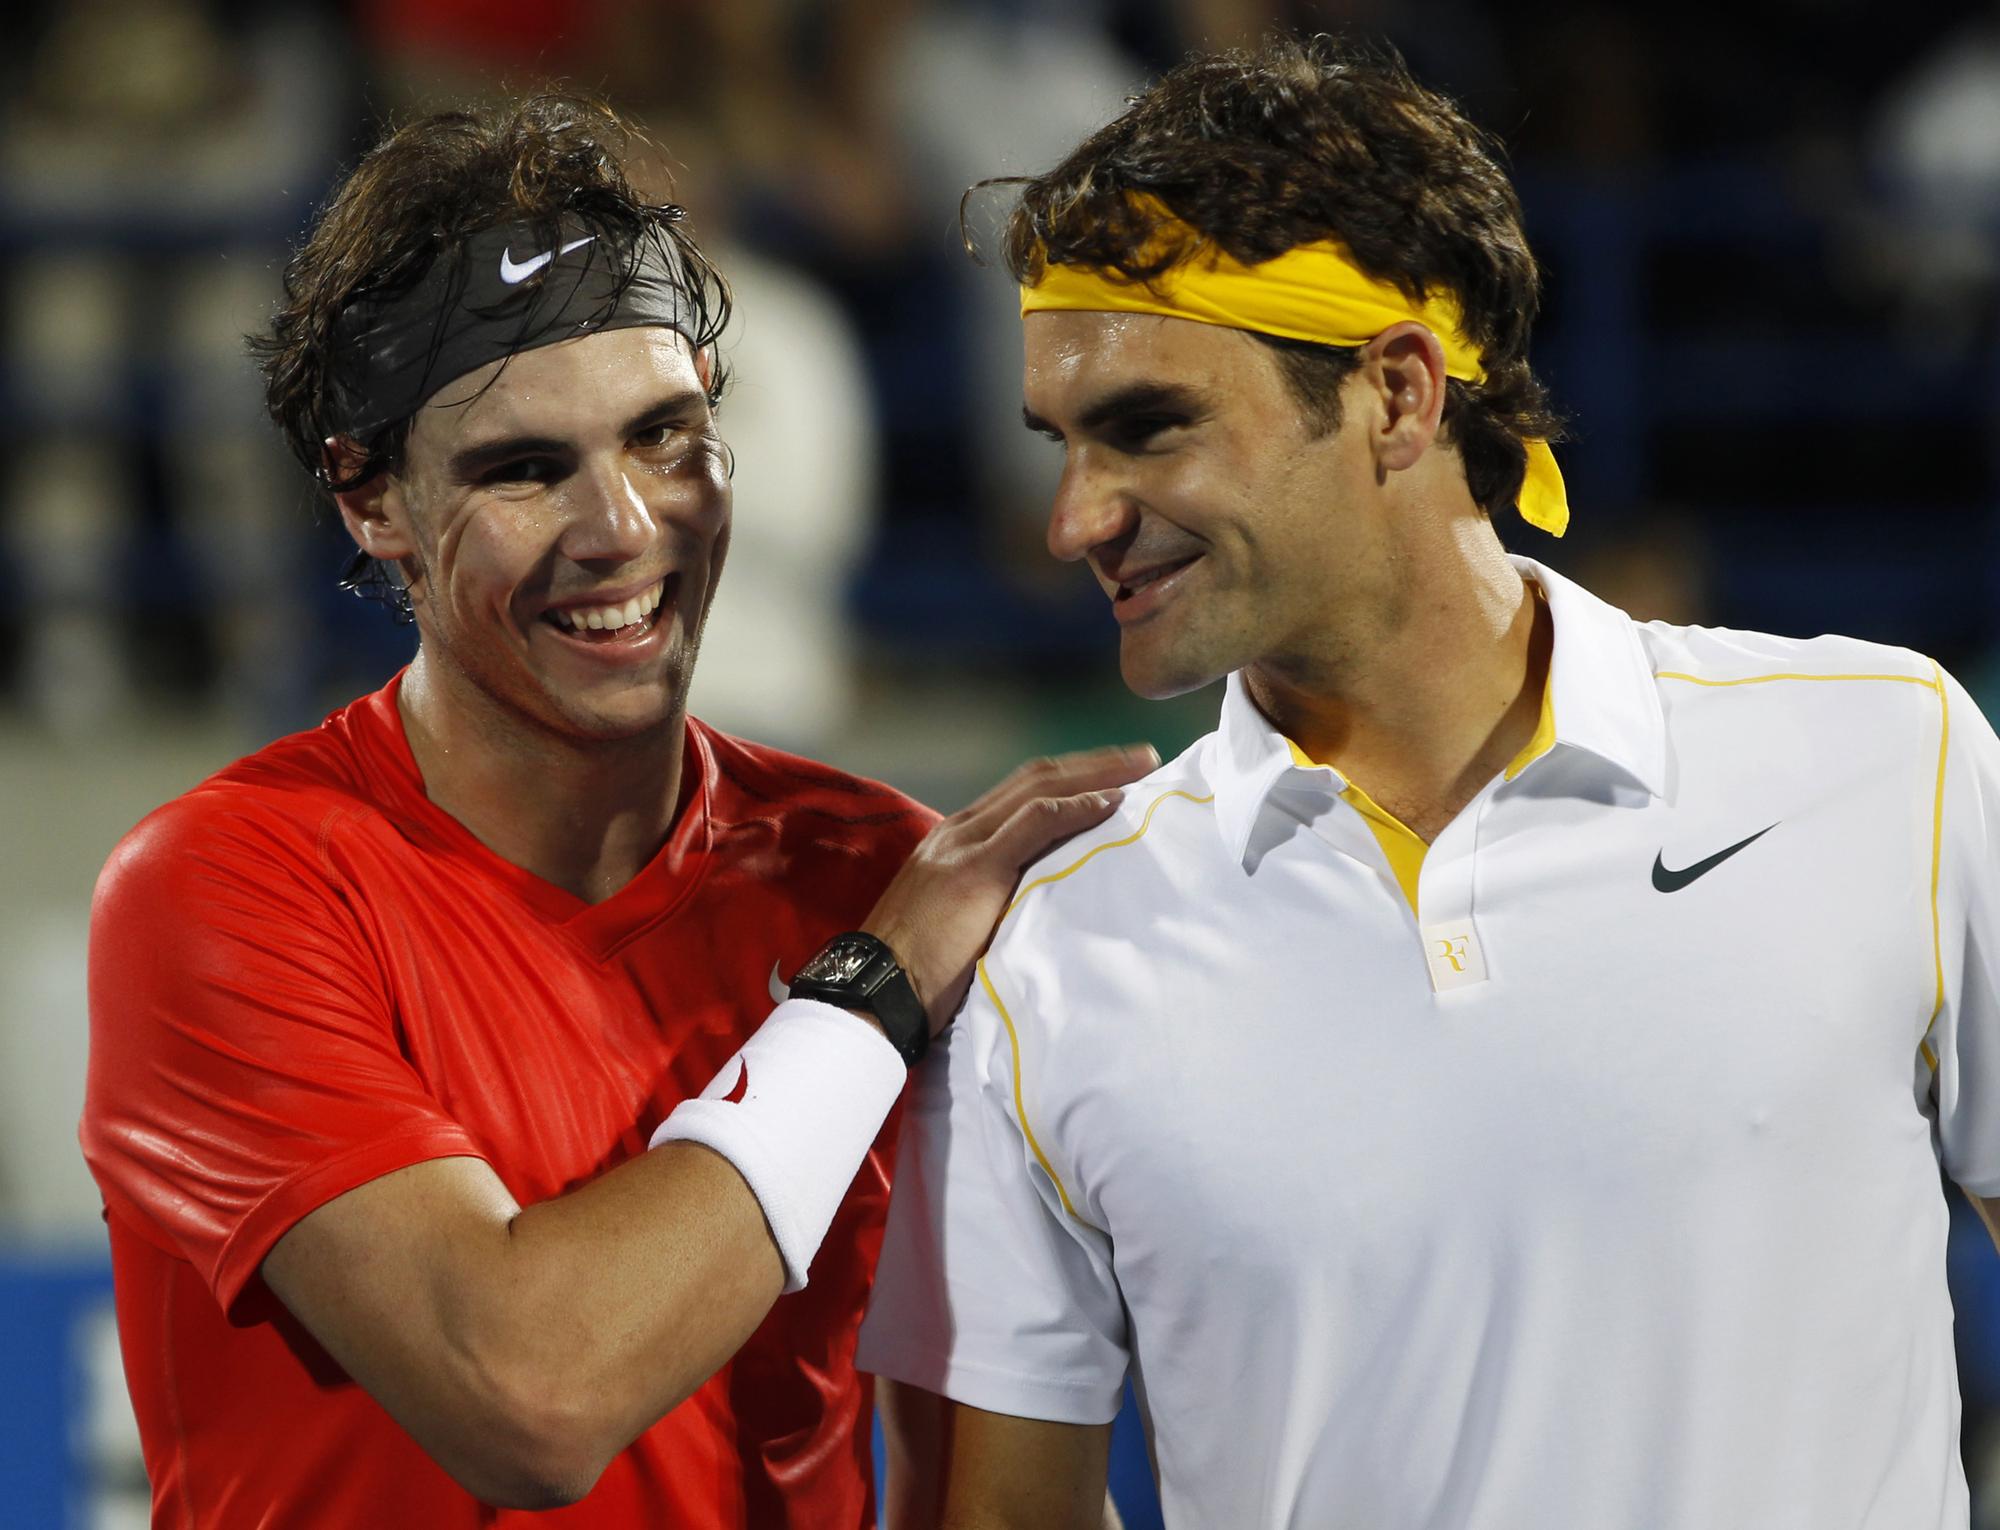 Malgré la défaite, Federer n'a pas perdu sa bonne humeur. [REUTERS - Ahmed Jadallah]